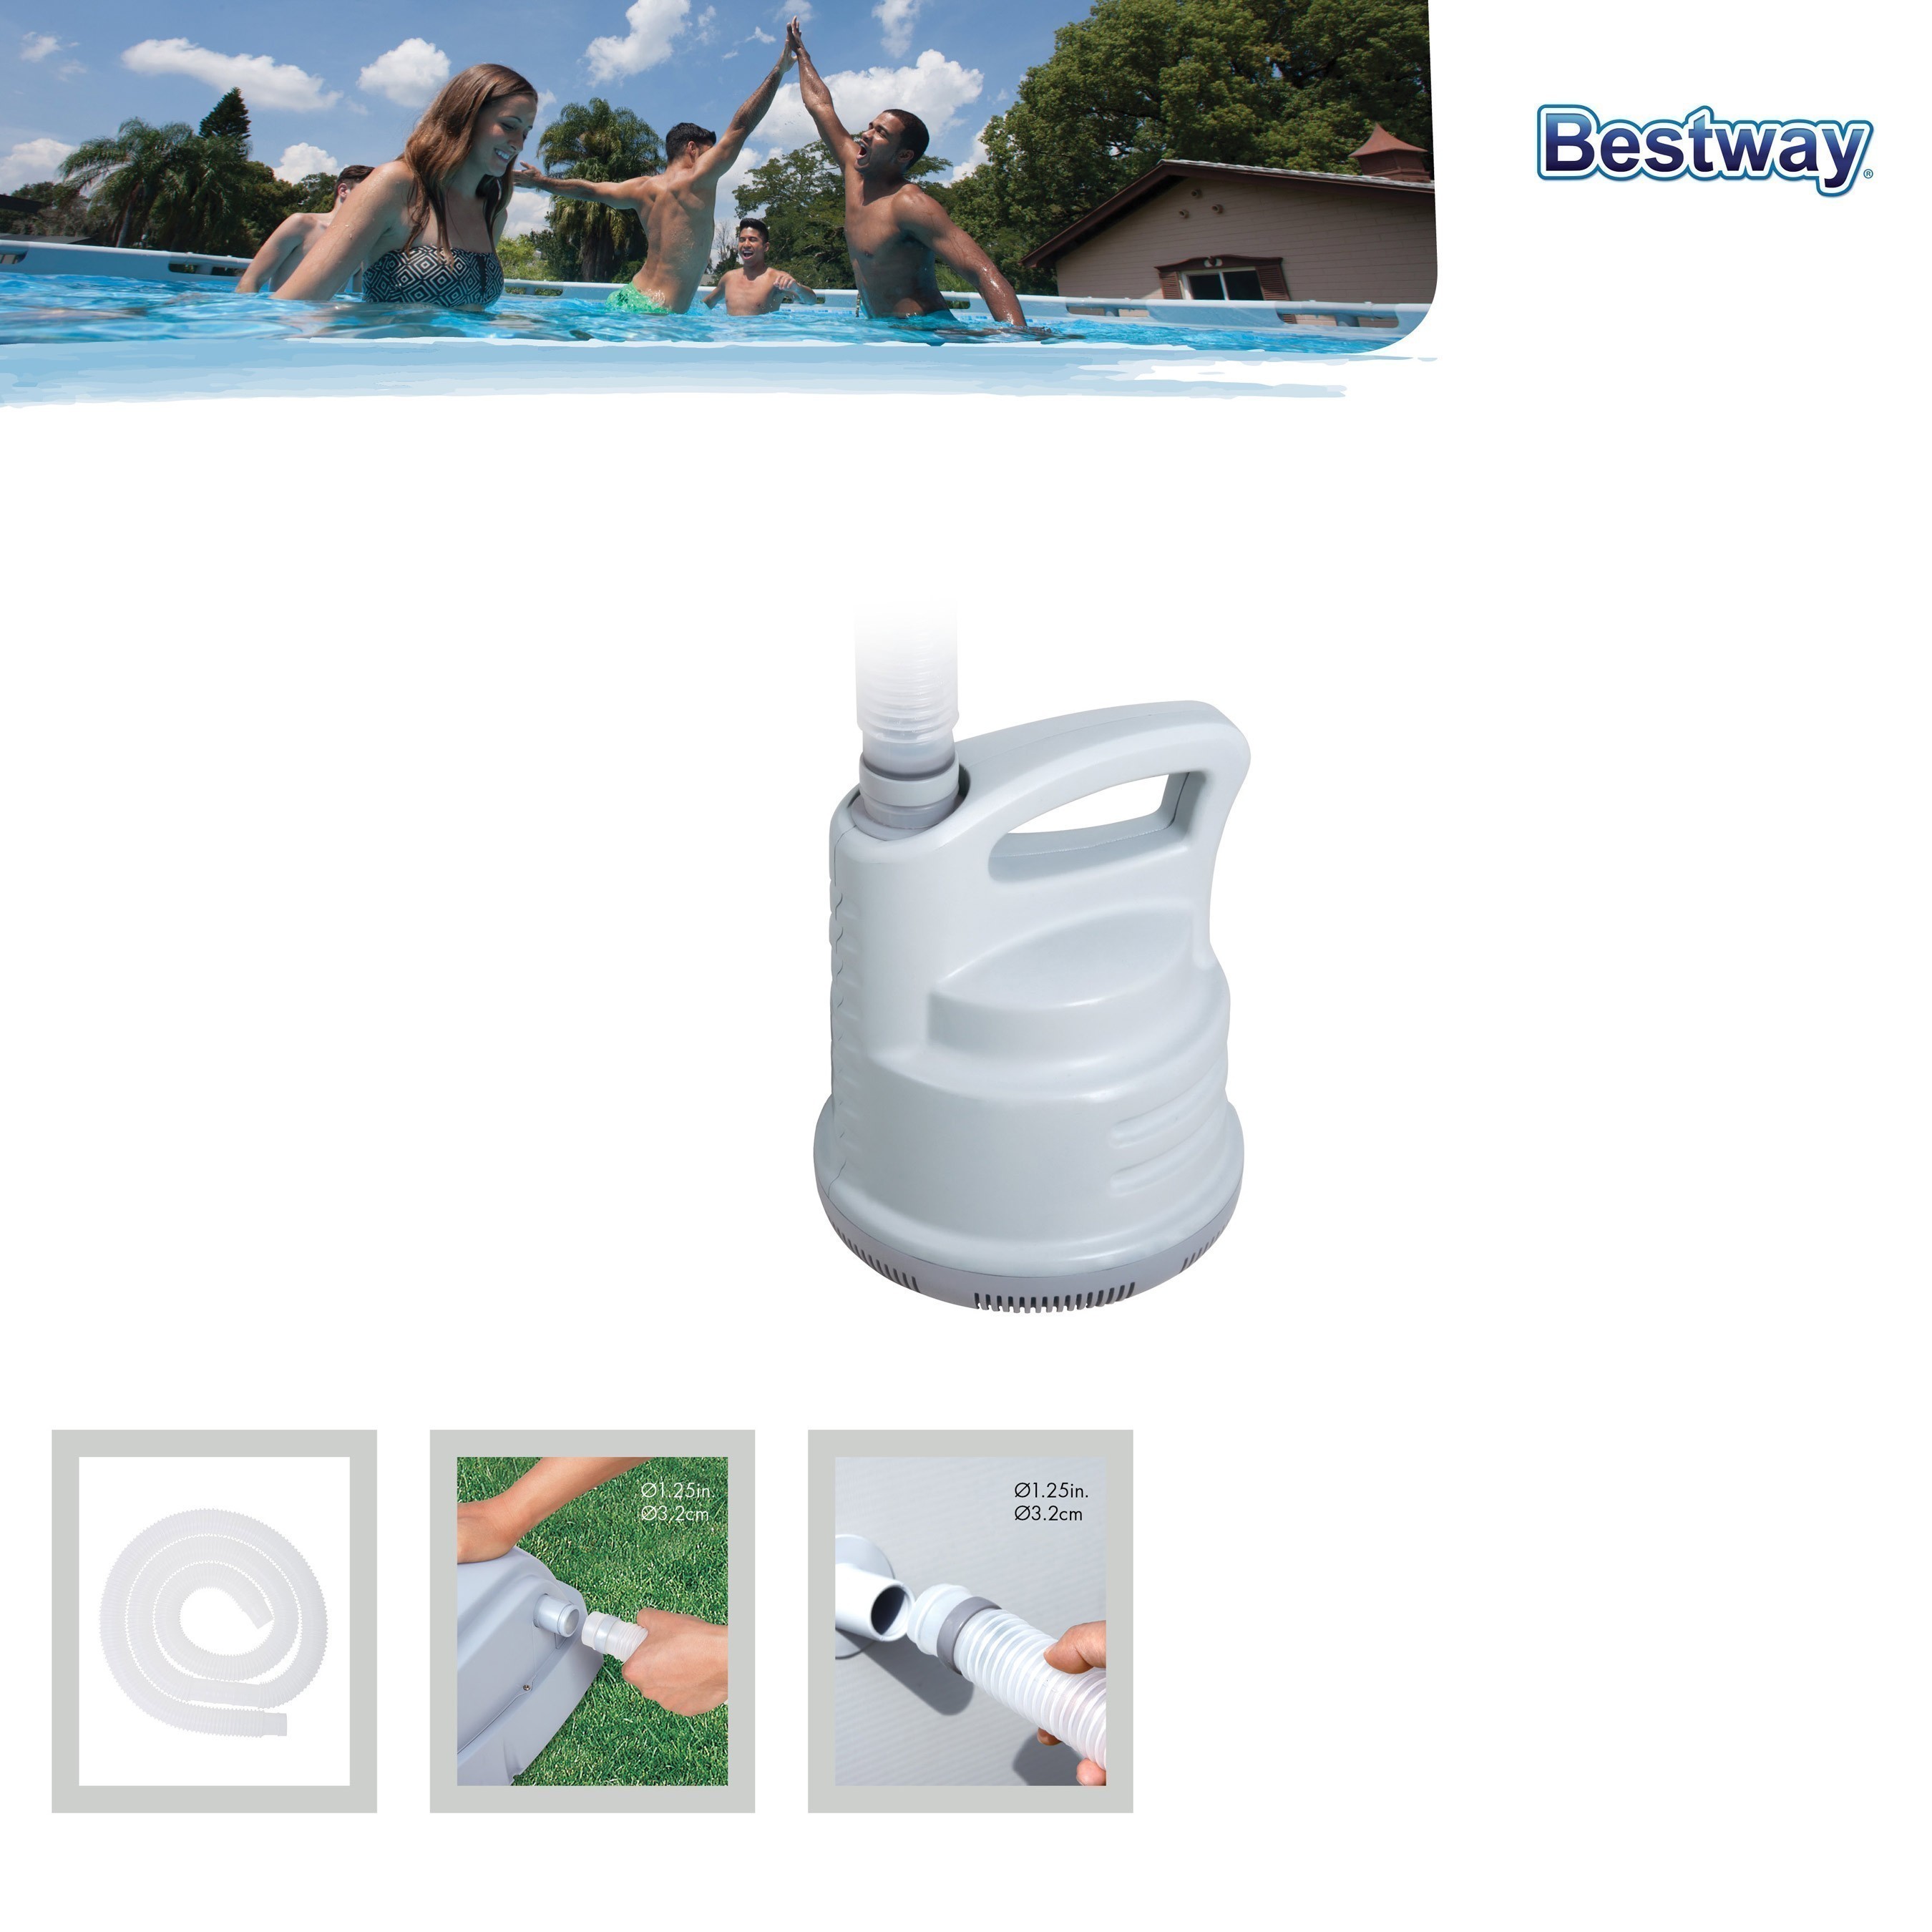 Bestway Poolpumpe Flowclear Pool-& Ablasspumpe